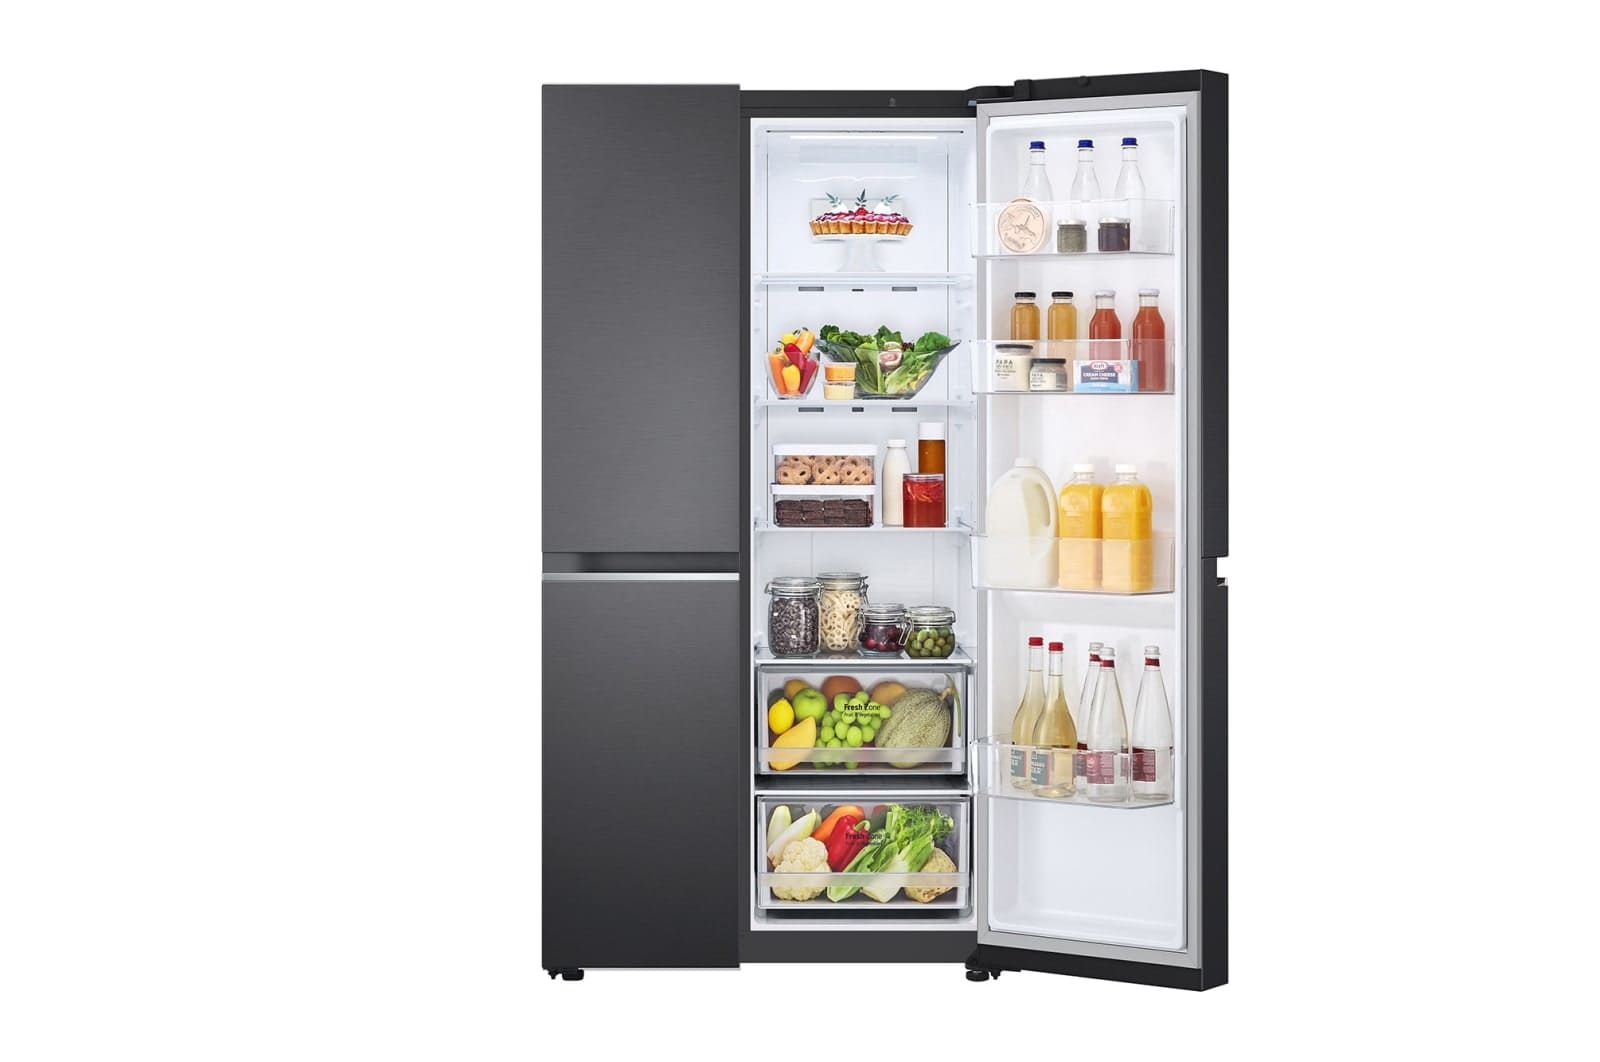 LG-694L-Side-by-side-fridge-7.jpg